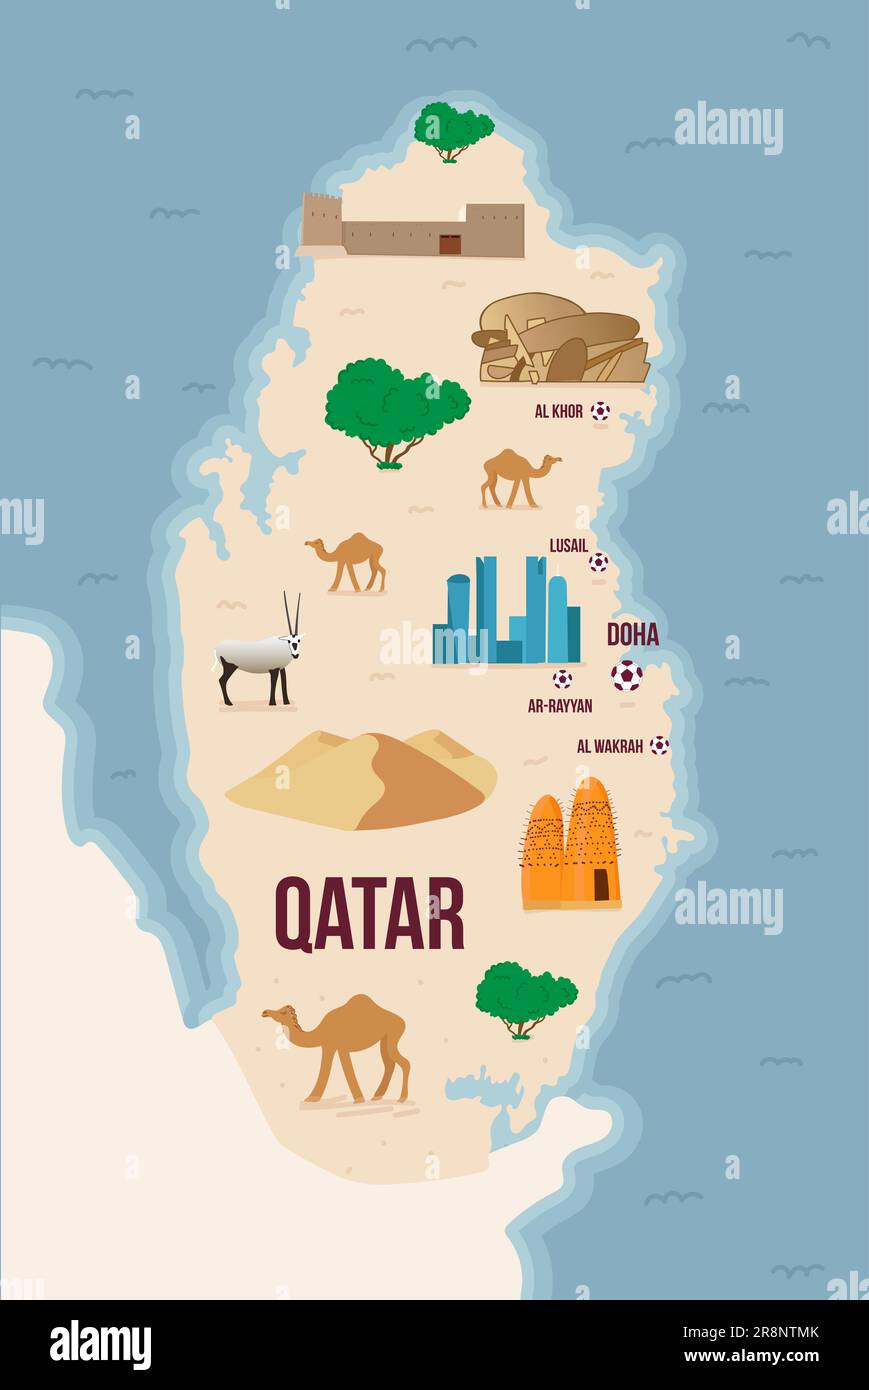 Illustrierte Karte von Katar mit Fußbällen, Namen und Wahrzeichen der Stadt. Museen und berühmte Orte. Farbige Karte zum weltweiten Wettbewerb. Vector illu Stock Vektor